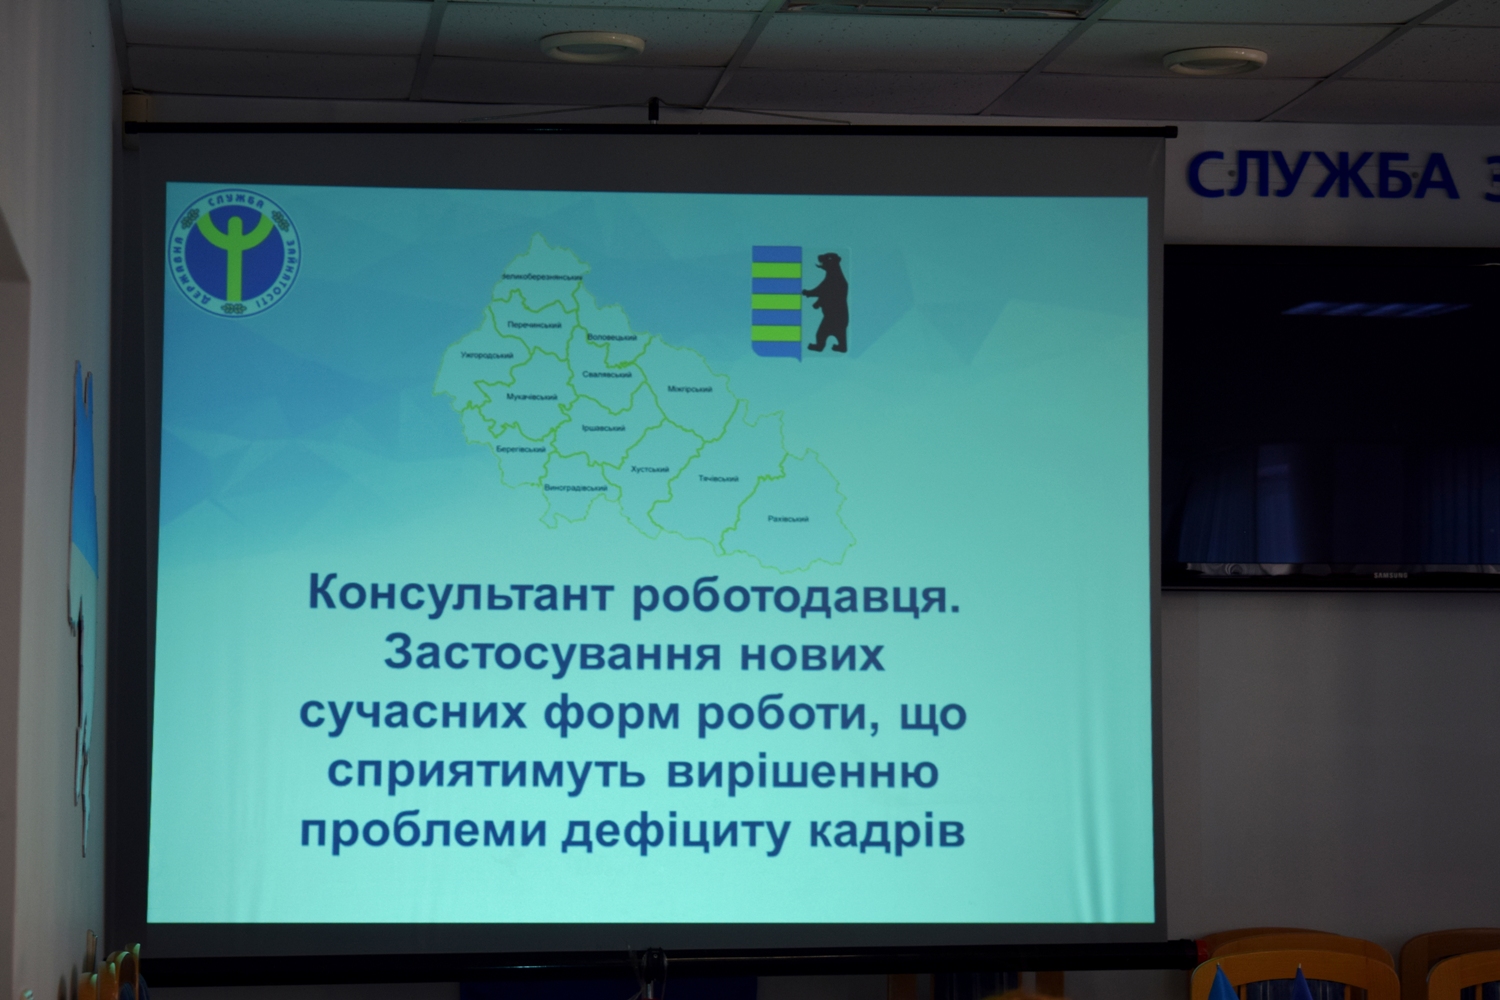 В Ужгороді презентували концепцію "Консультант роботодавця" (ФОТО)